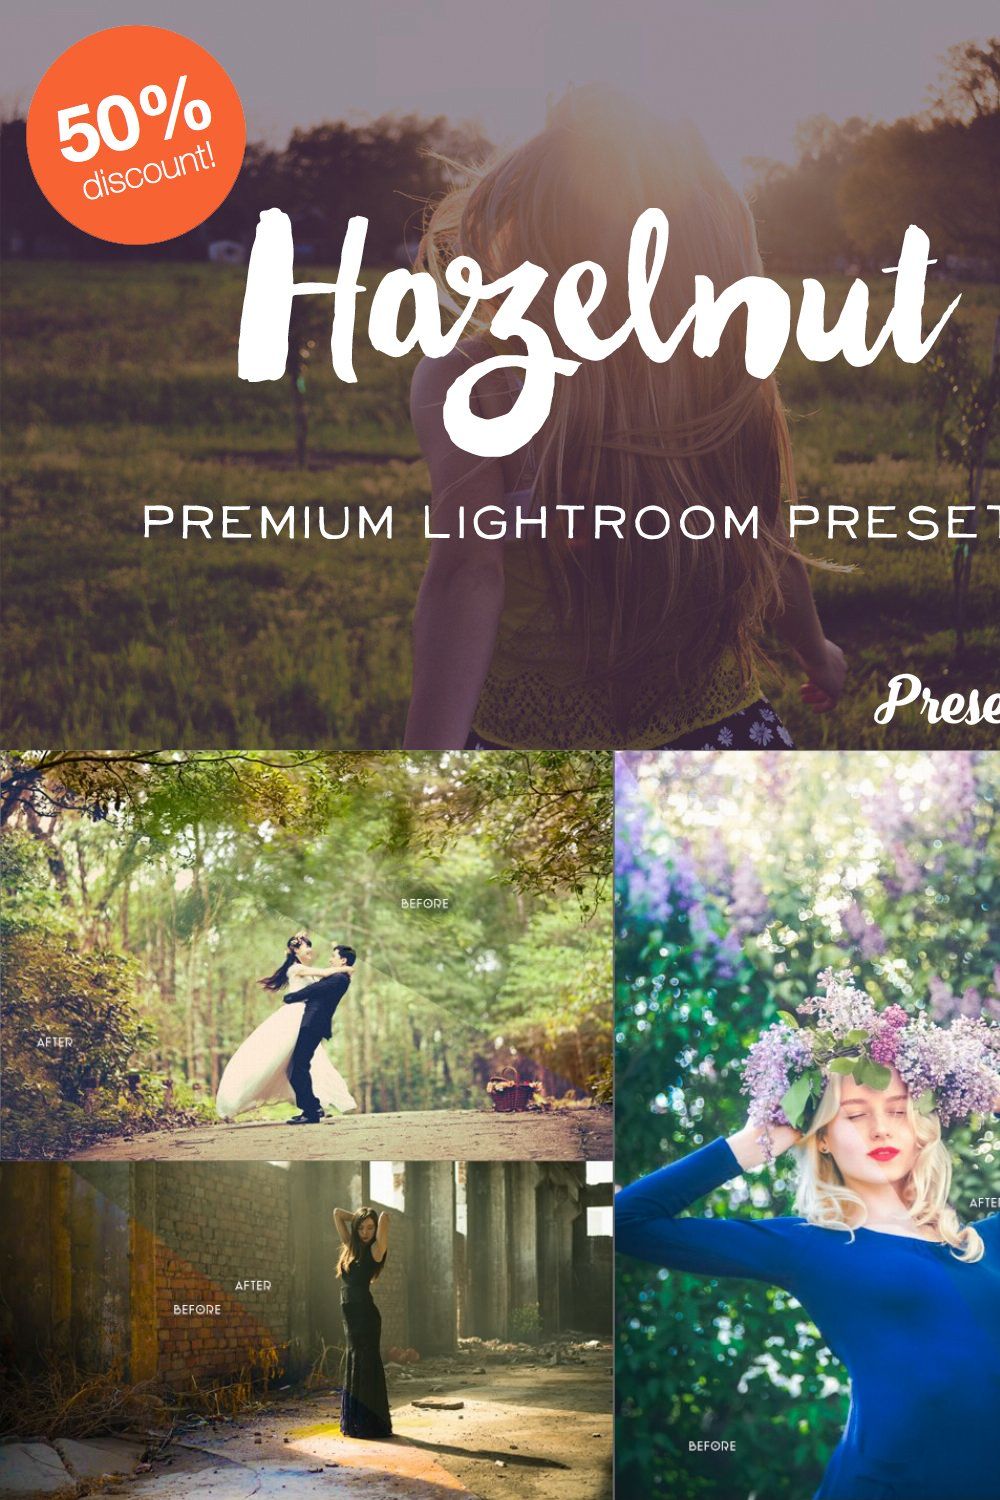 50% off Hazelnut Lightroom Presets pinterest preview image.